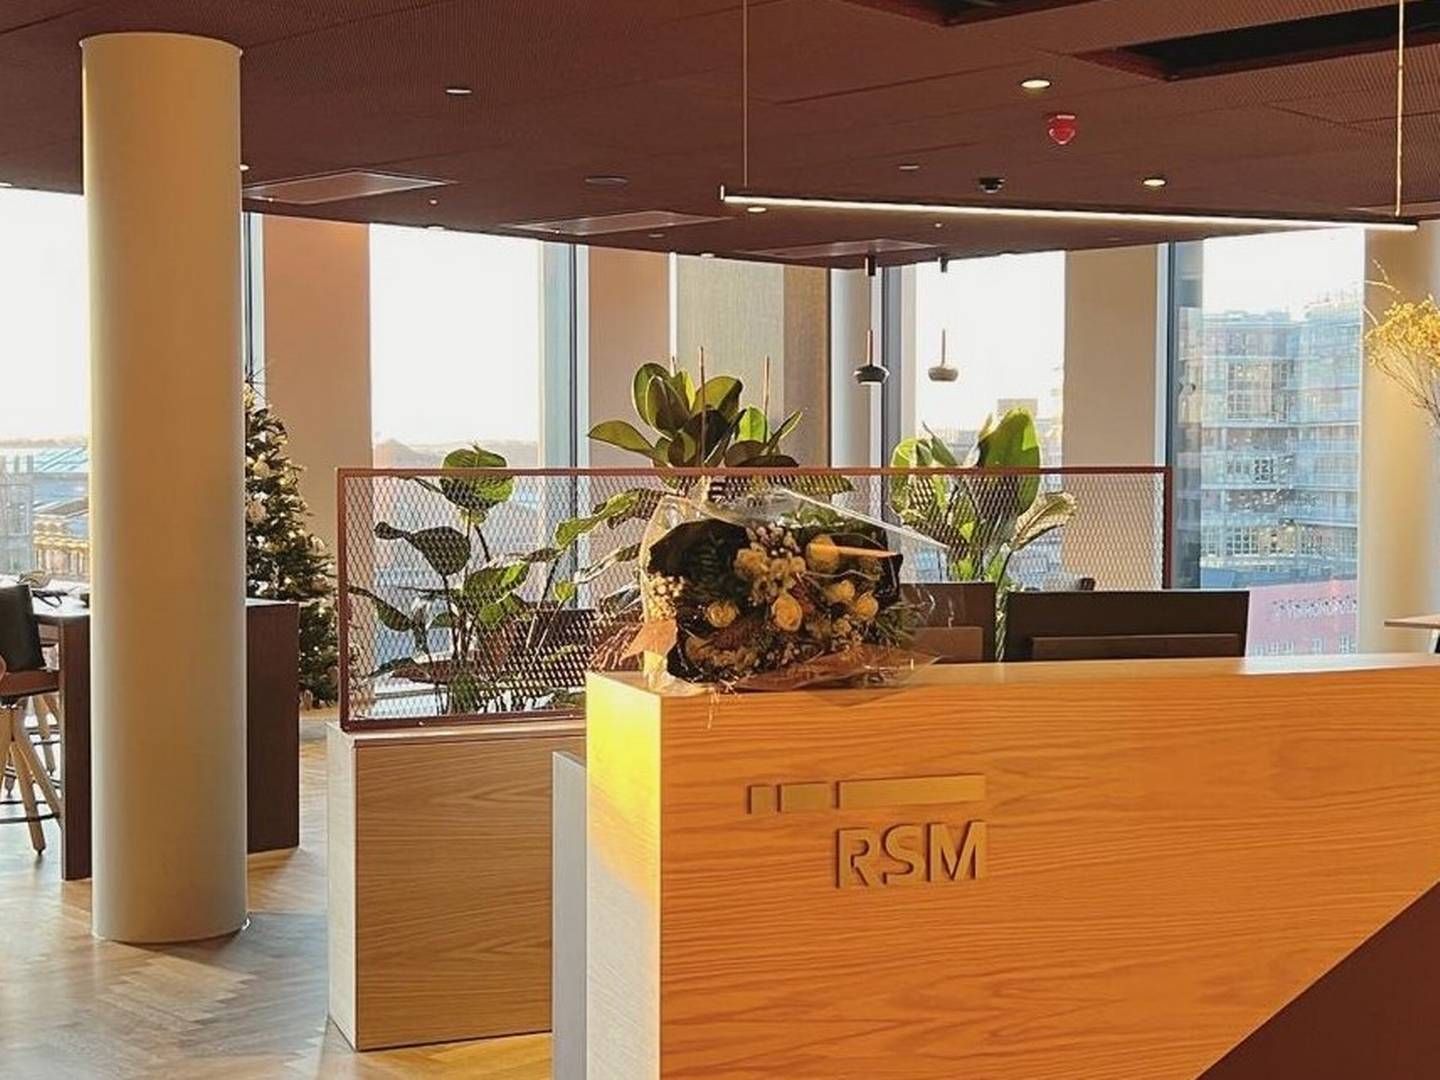 HOLDER TIL I VIKA: RSM Norge holder til i samme bygg som Thommessen, ett av advokatfirmaene som står på kundelisten til revisjons- og rådgivningsfirmaet. | Foto: RSM Norge